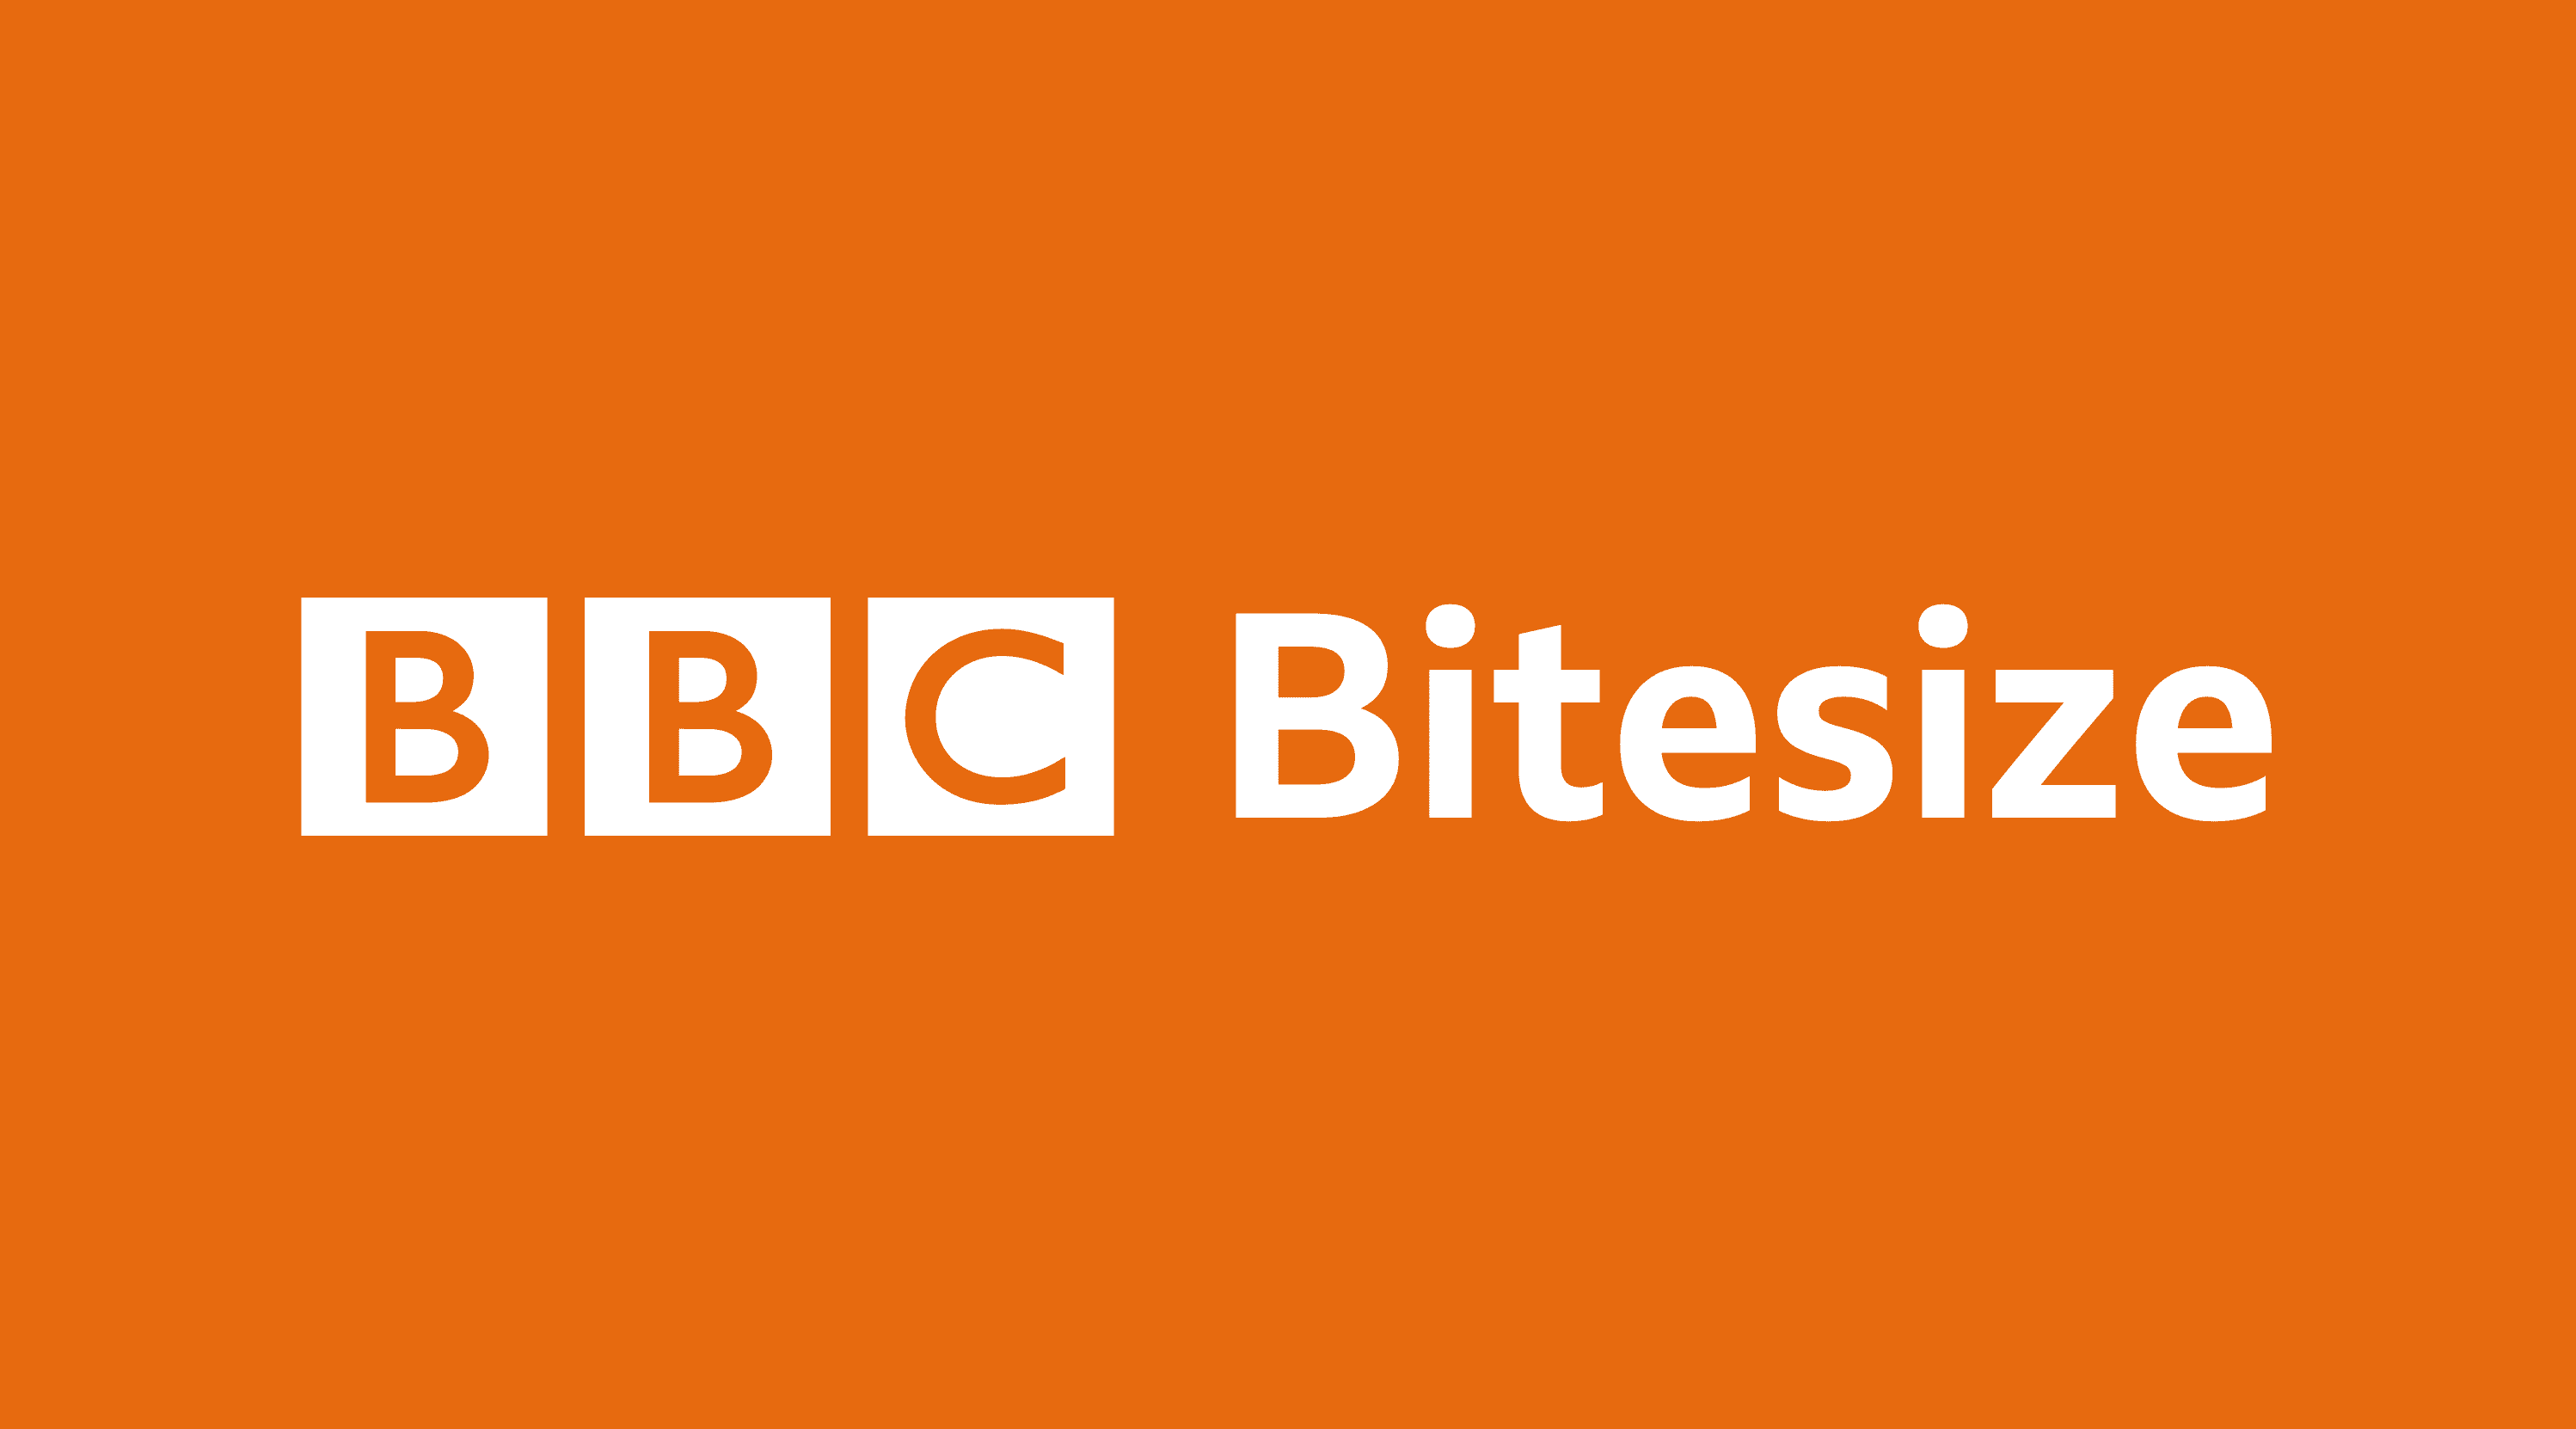 Primary games - BBC Bitesize